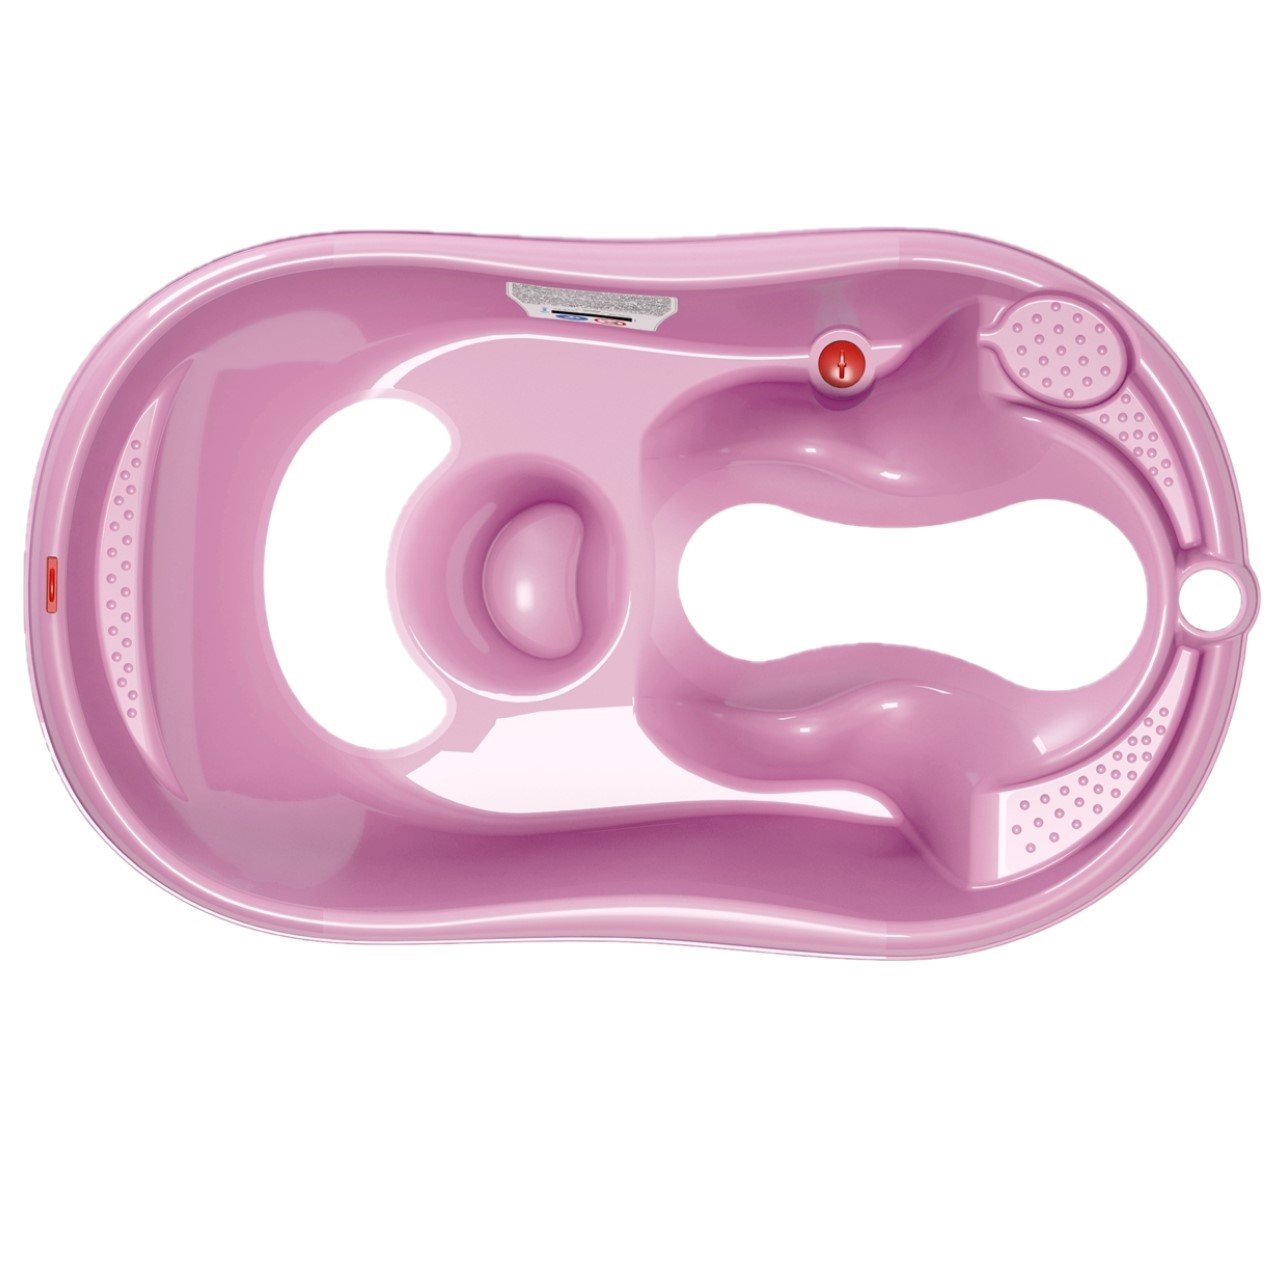 Ванночка с анатомической горкой OK Baby Onda Evolution, розовая (38081400) - фото 1